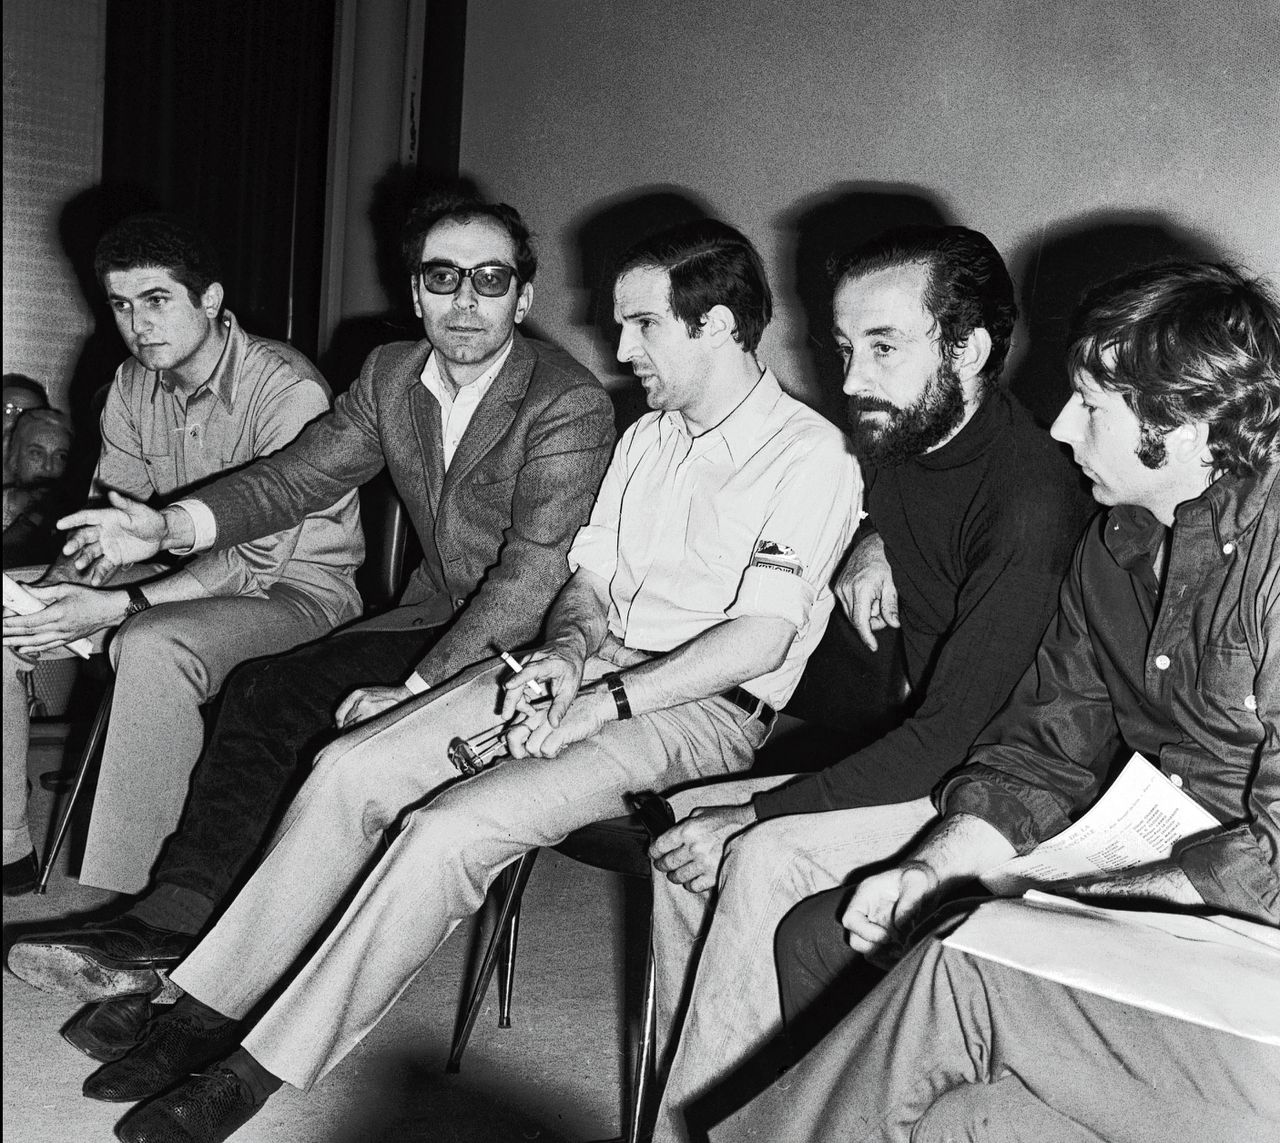 Jean-Luc Godard (tweede van links, met bril) met andere regisseurs tijdens een persconferentie op het Filmfestival van Cannes, in mei 1968. Links van Godard zit Claude Lelouch, rechts van hem zitten François Truffaut, Louis Malle en Roman Polanski.